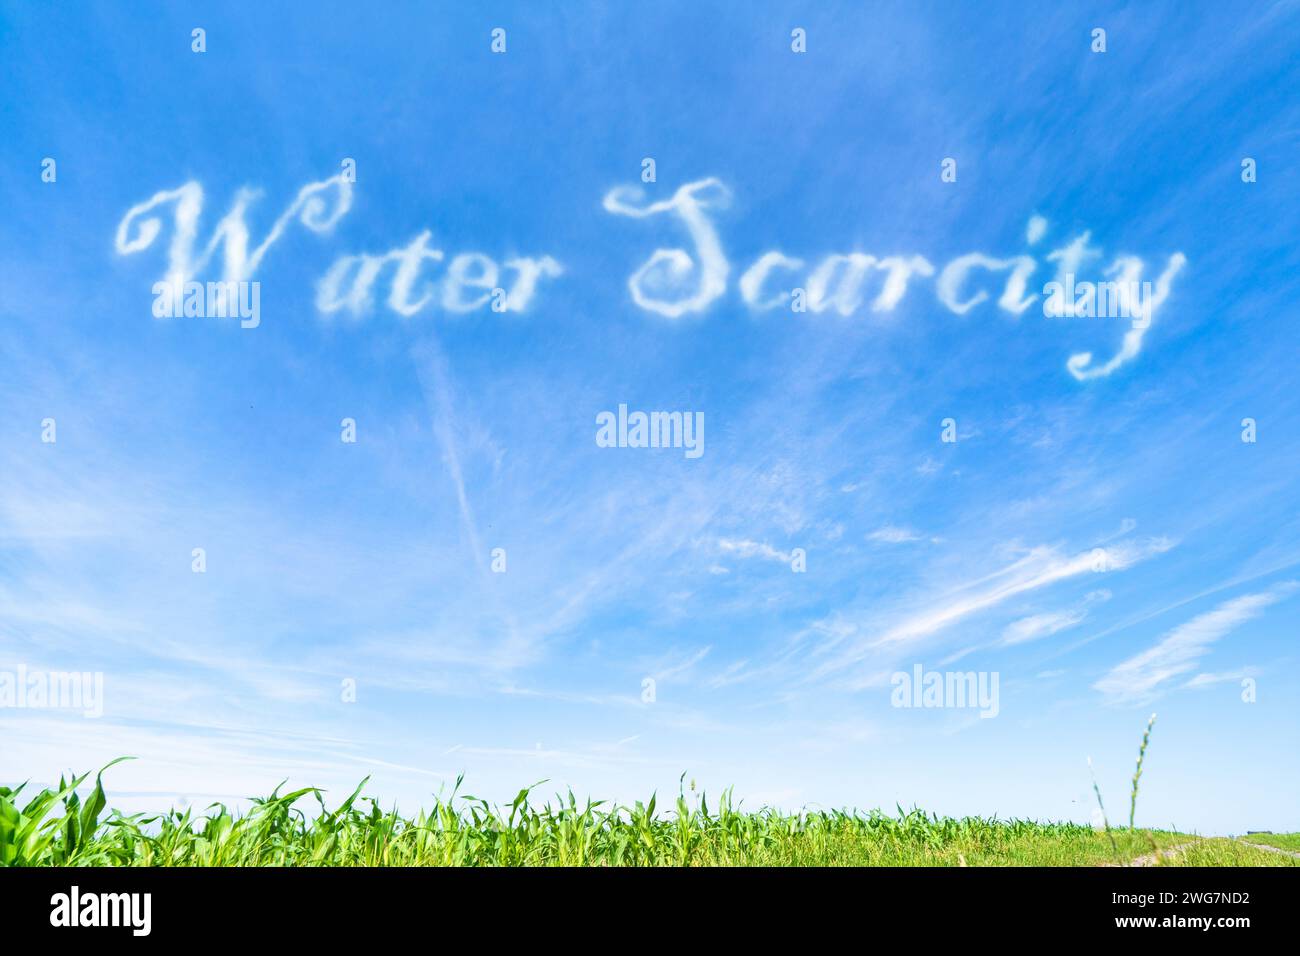 Wasserknappheit: Unzureichender Zugang zu sauberem Wasser aufgrund von Faktoren wie Überextraktion und Verschmutzung. Stockfoto